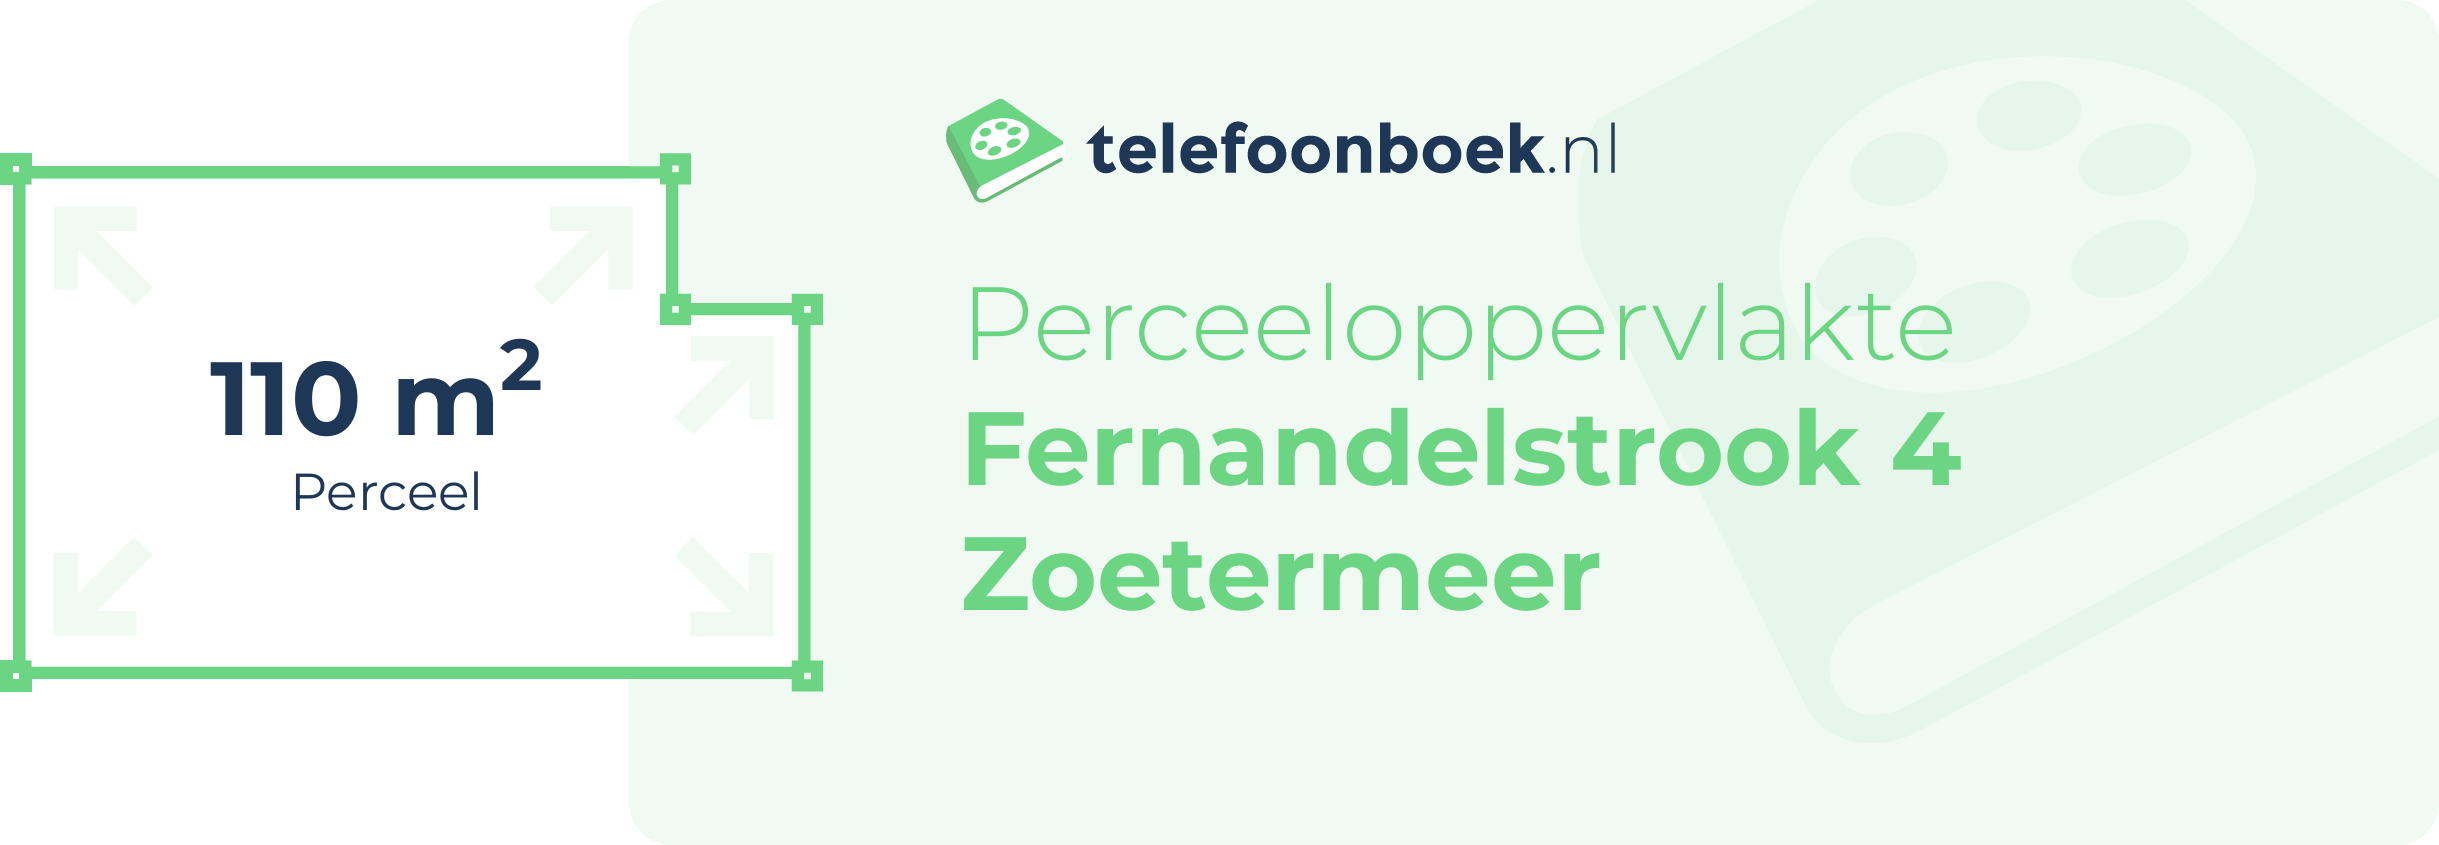 Perceeloppervlakte Fernandelstrook 4 Zoetermeer